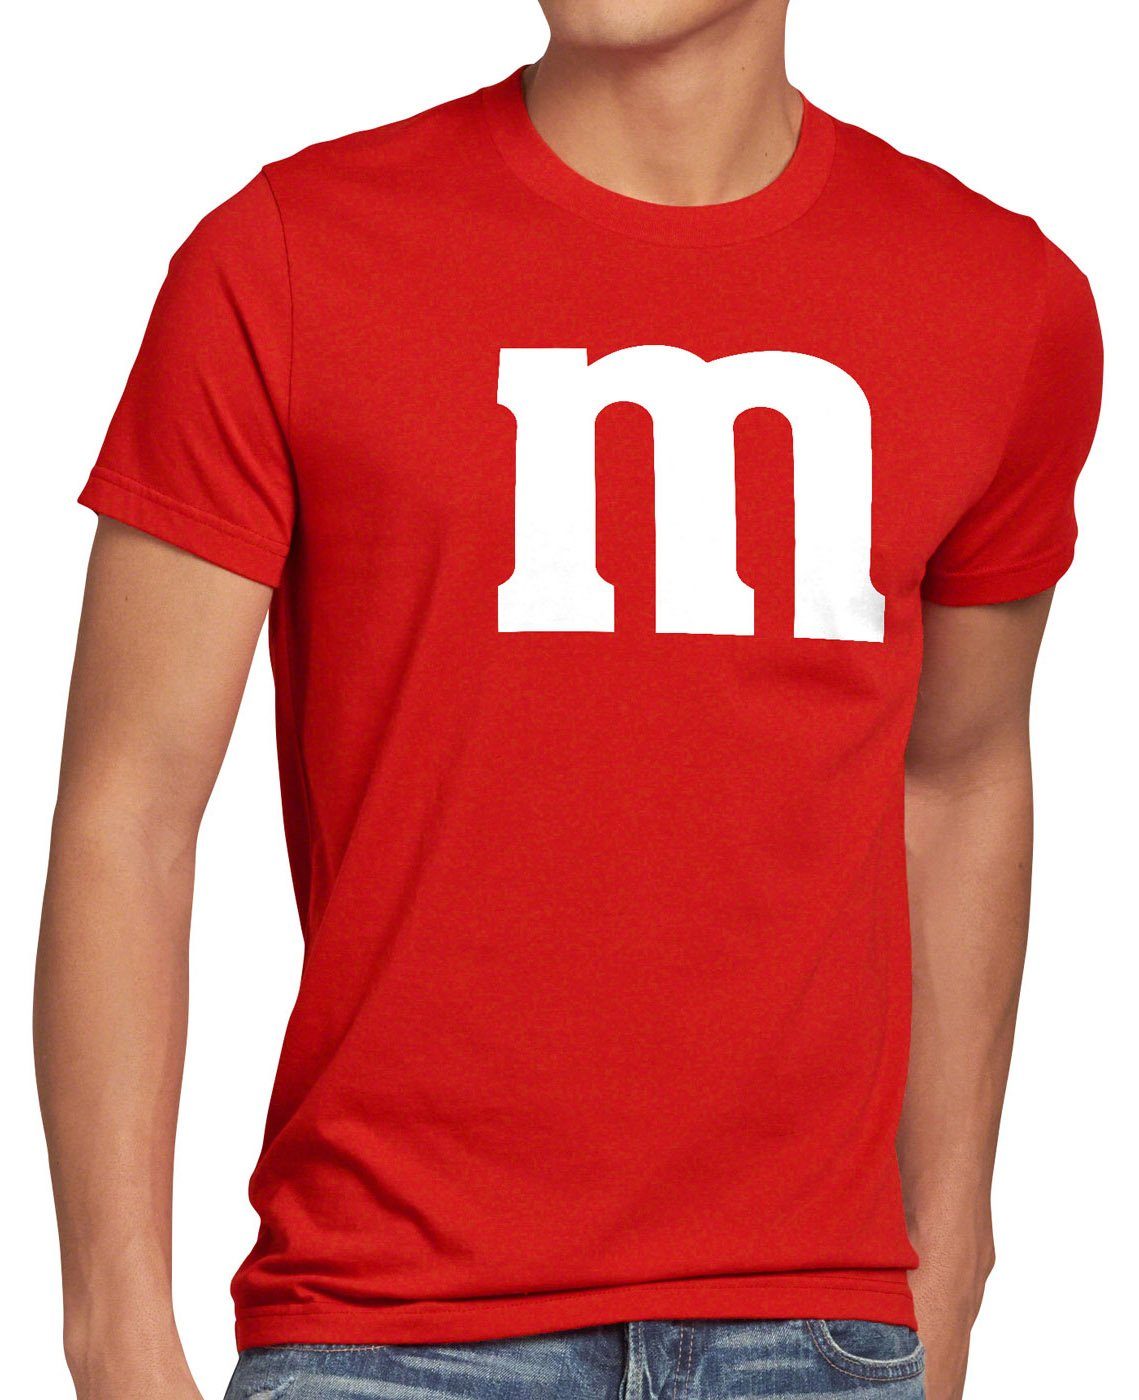 style3 Print-Shirt Herren T-Shirt m Fasching Karneval Kostüm Gruppenkostüm Umzug Verkleidung Fun rot